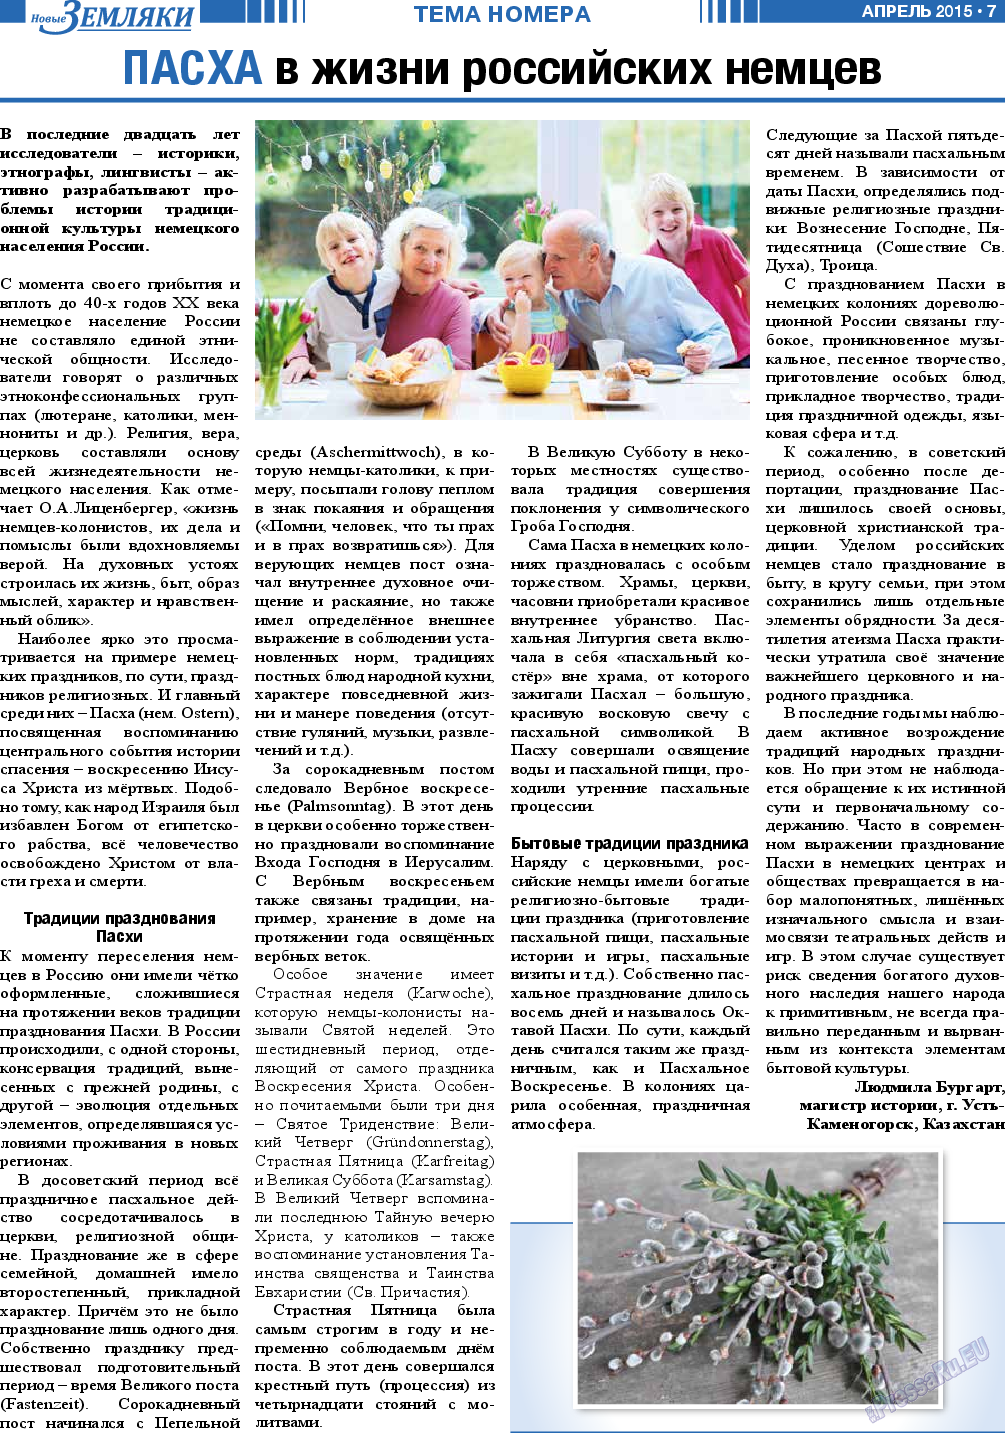 Новые Земляки (газета). 2015 год, номер 4, стр. 7